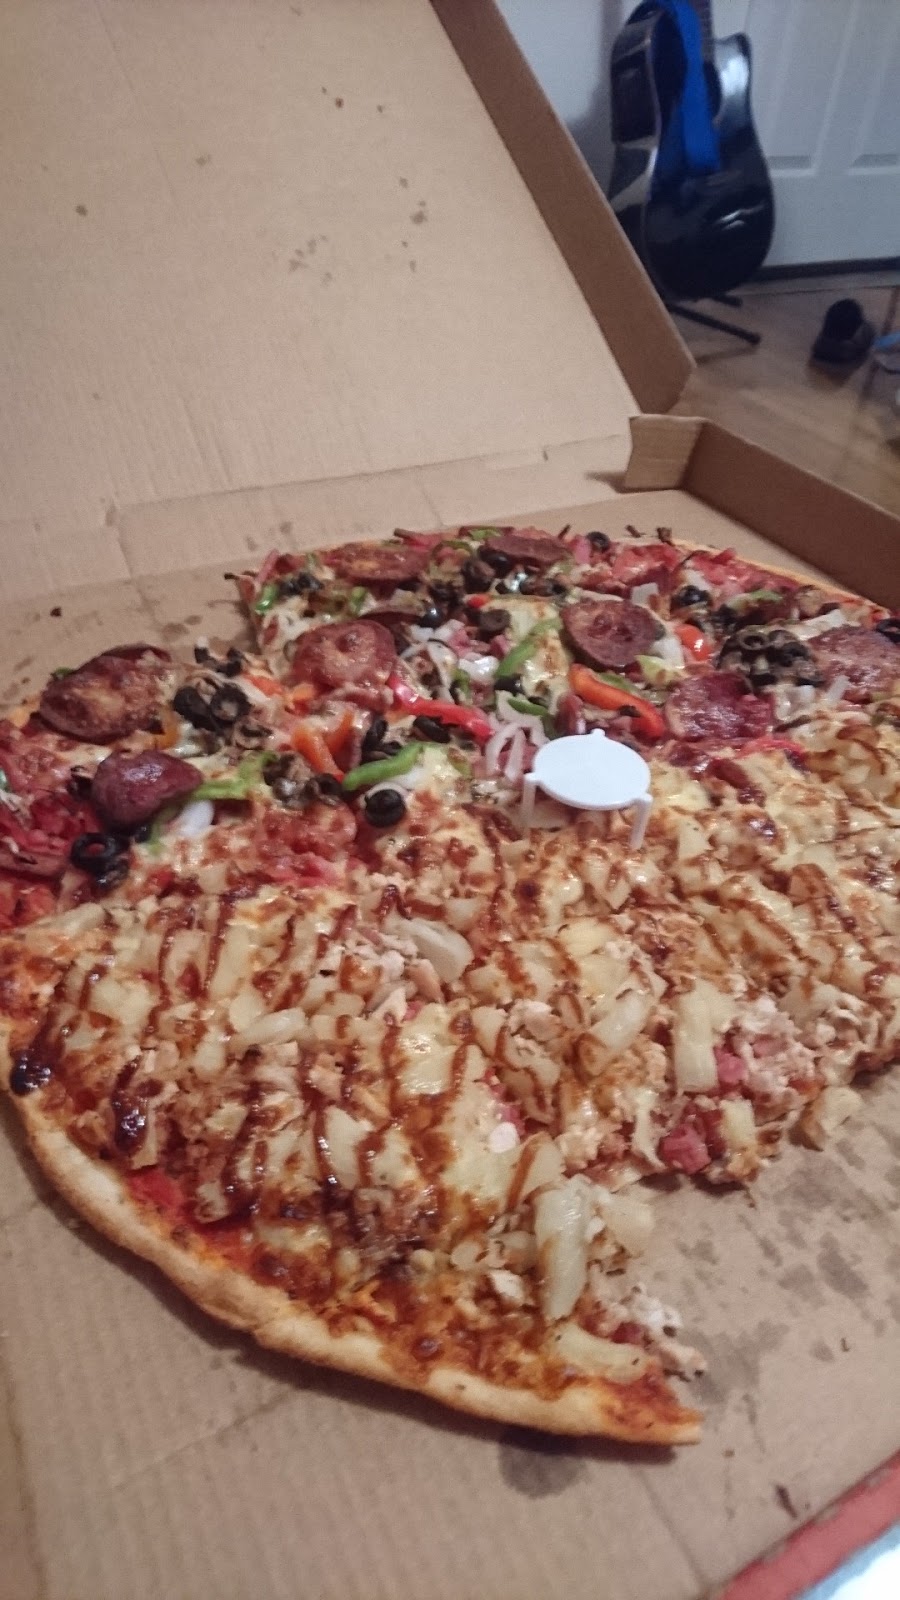 Aldinga Pizza & Pasta | 22 Old Coach Rd, Aldinga Beach SA 5173, Australia | Phone: (08) 8557 7666